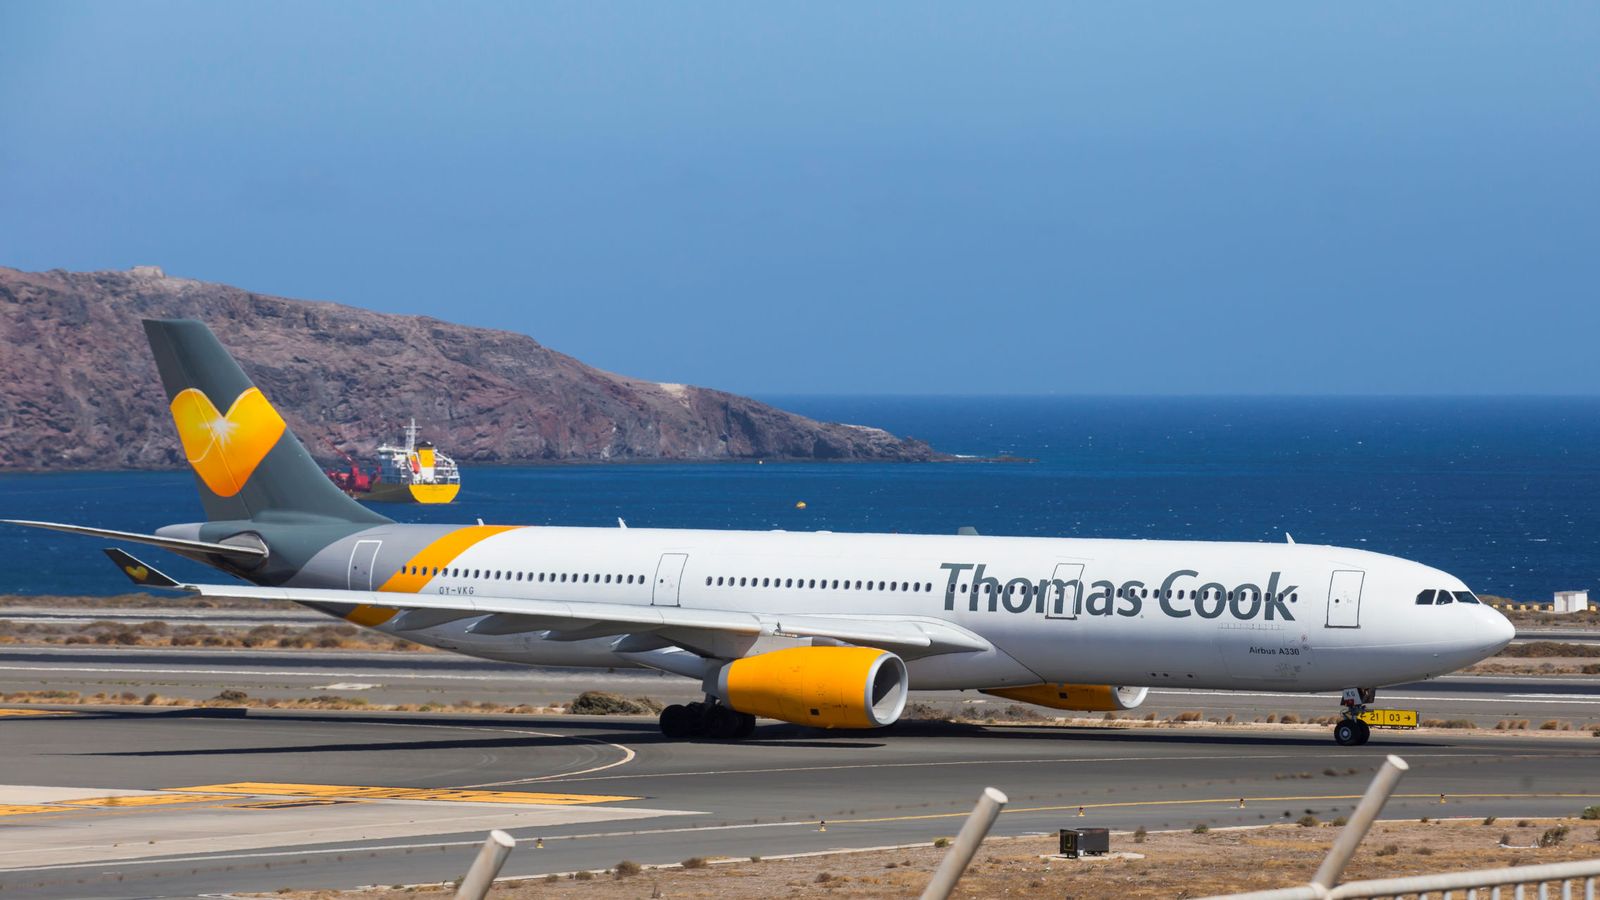 Foto: Un avión de Thomas Cook, a punto de despegar del aeropuerto de Las Palmas de Gran Canaria. (Reuters)